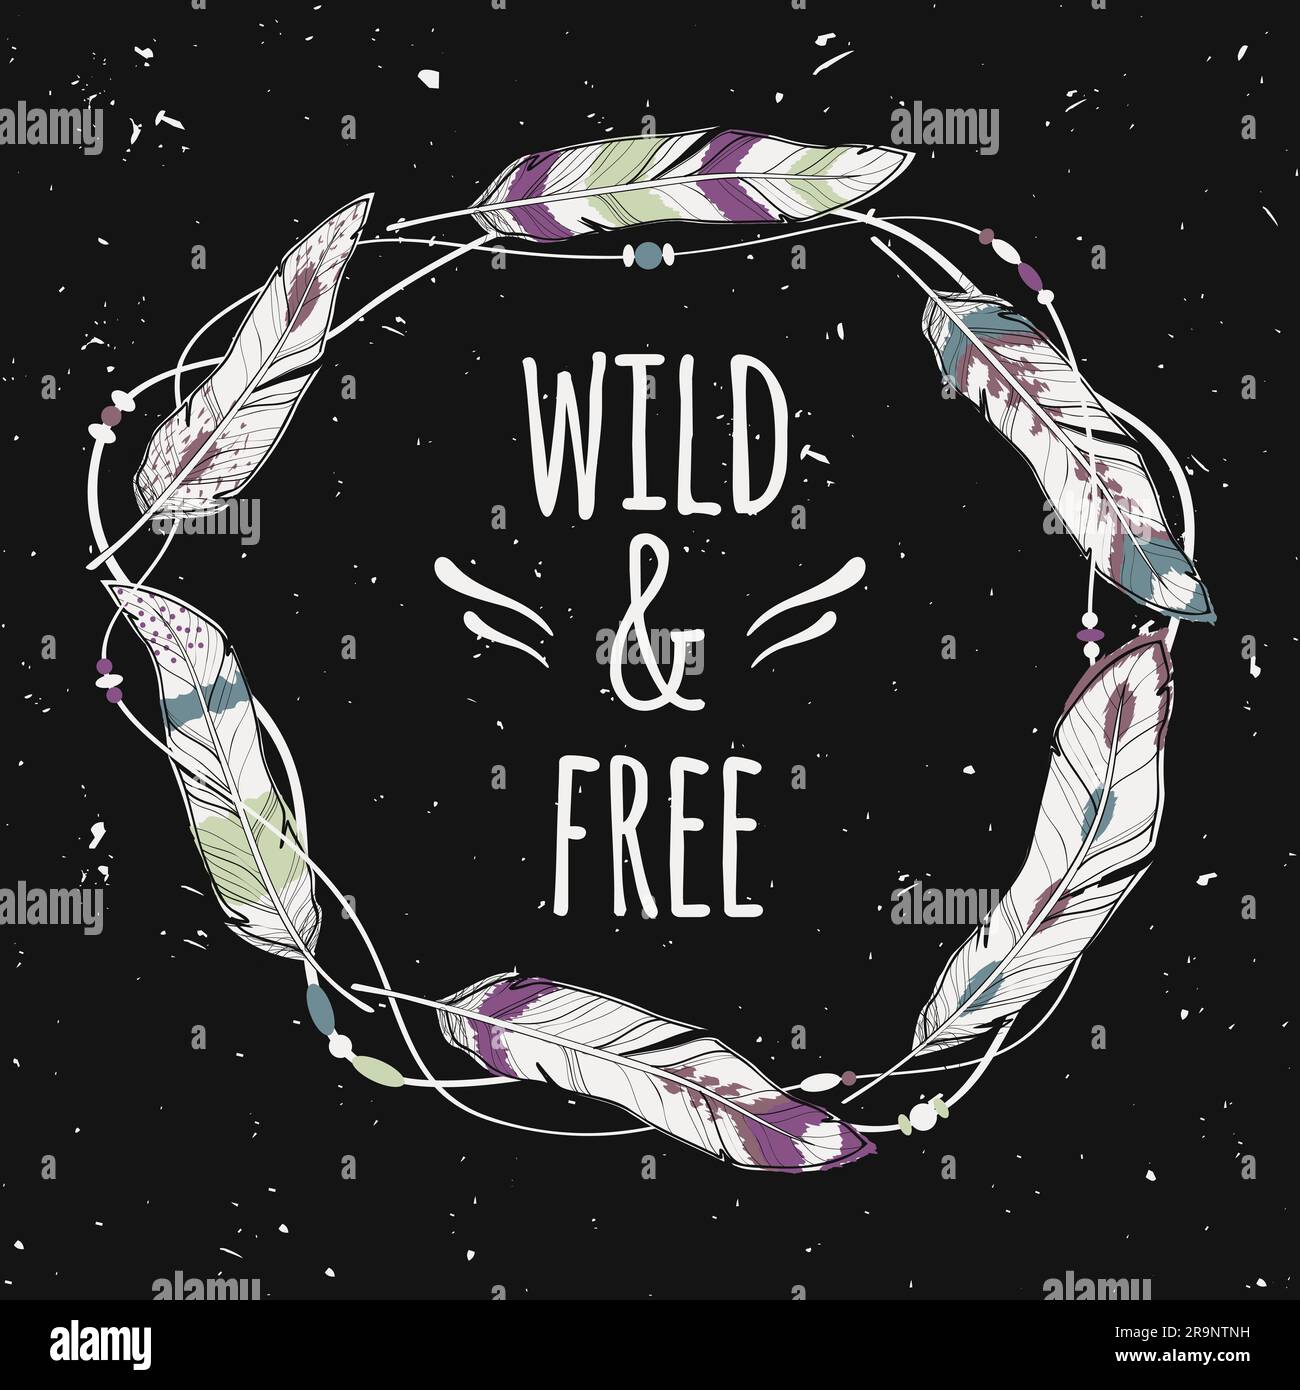 Poster grunge vettoriale con cornice etnica decorativa in piume, fili e perline con testo "Wild and Free". Concetto di libertà. Illustrazione Vettoriale